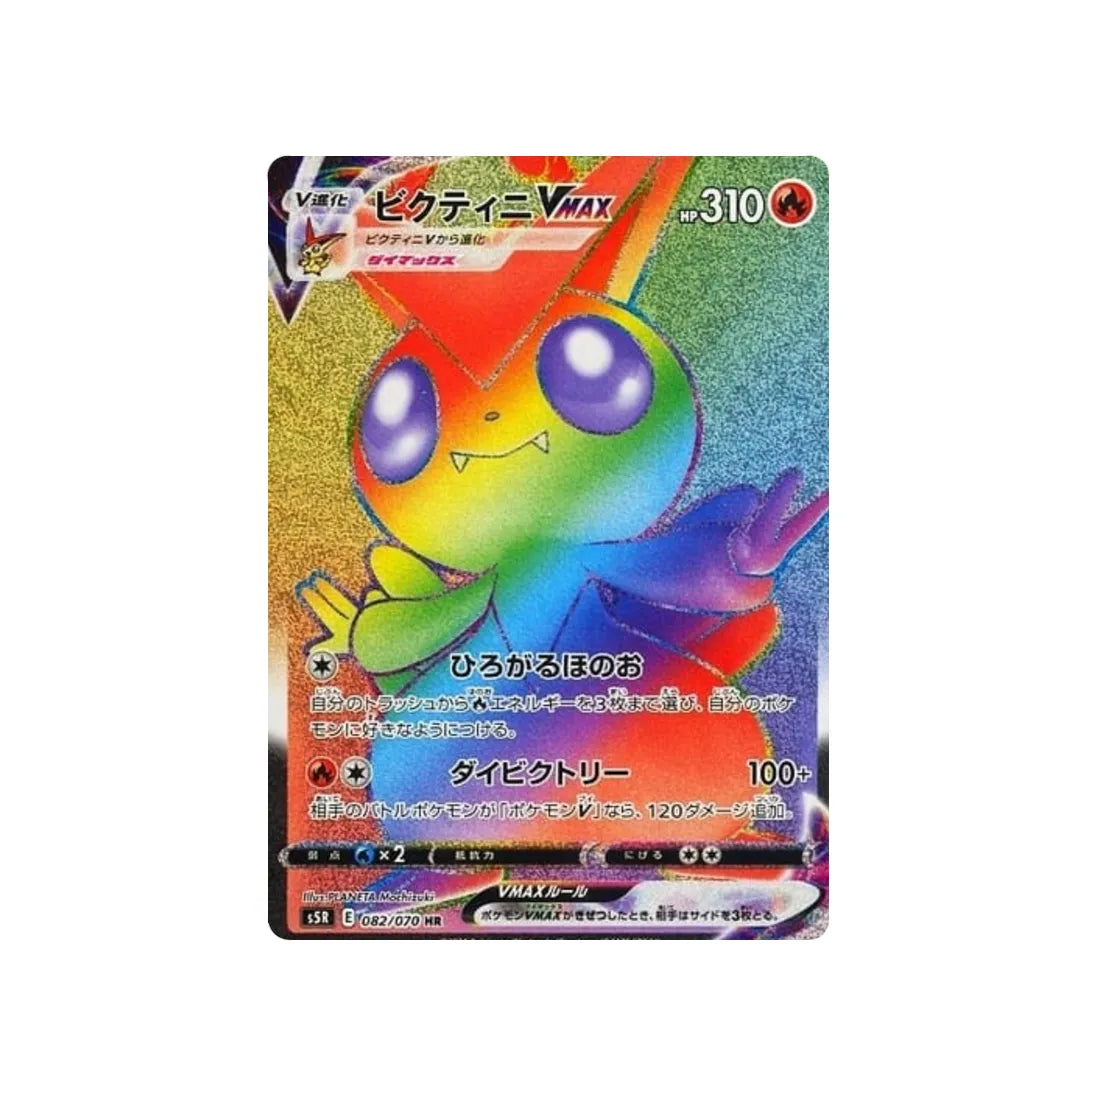 victini-vmax-carte-pokemon-rapid-strike-s5r-082